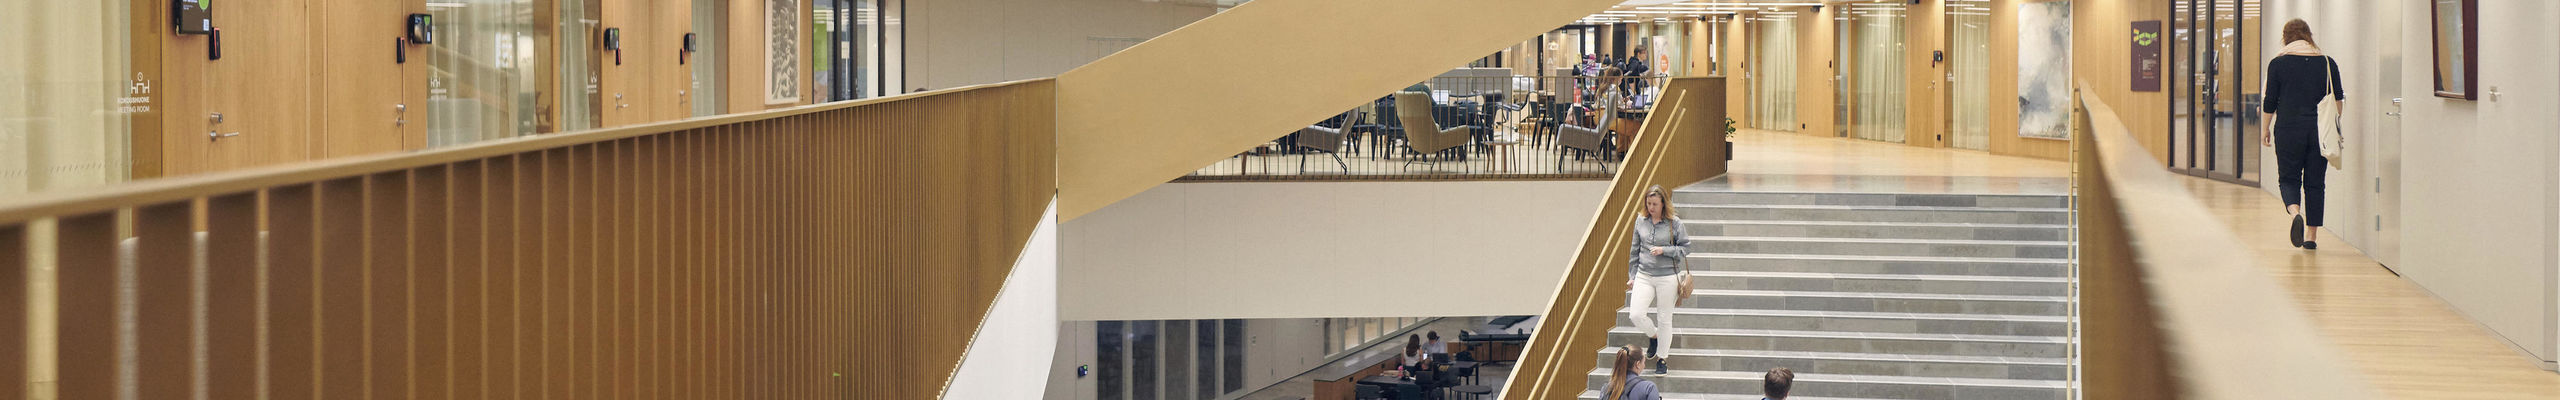 Kauppakorkeakoulun portaikko pohjakerroksesta ensimmäiseen kerrokseen. Kuva: Unto Rautio / Aalto-yliopisto